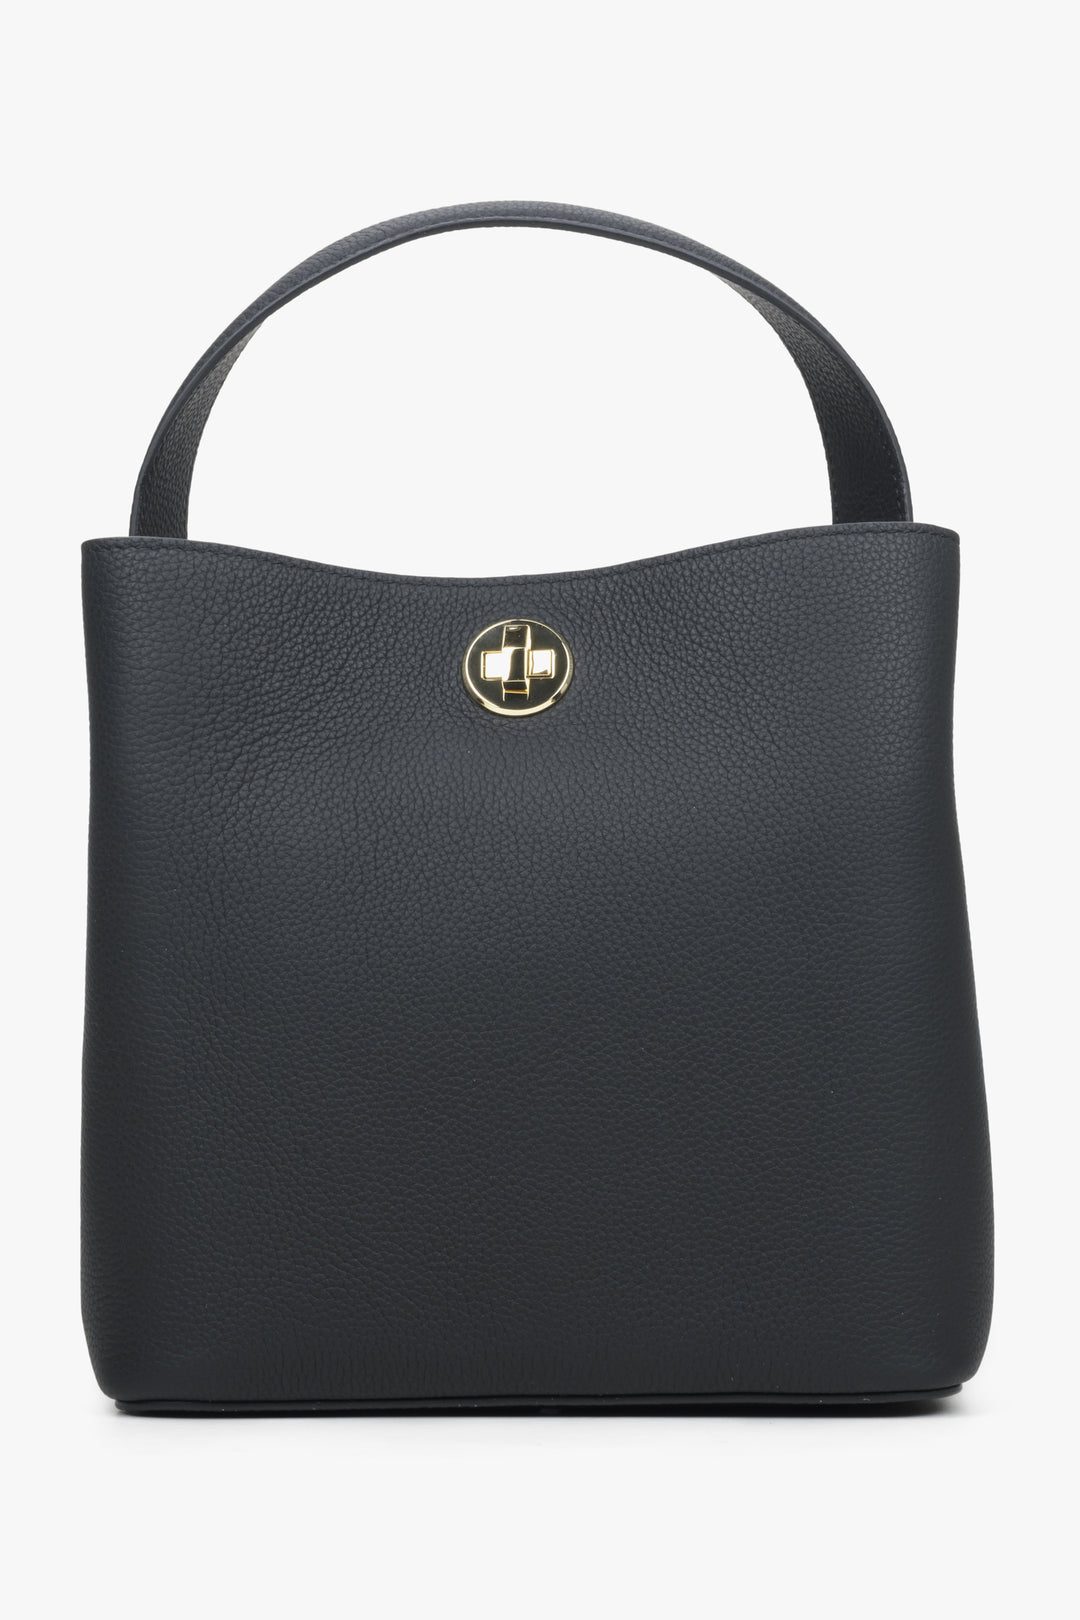 Women's Black Handbag made of Genuine Leather Estro ER00114437.